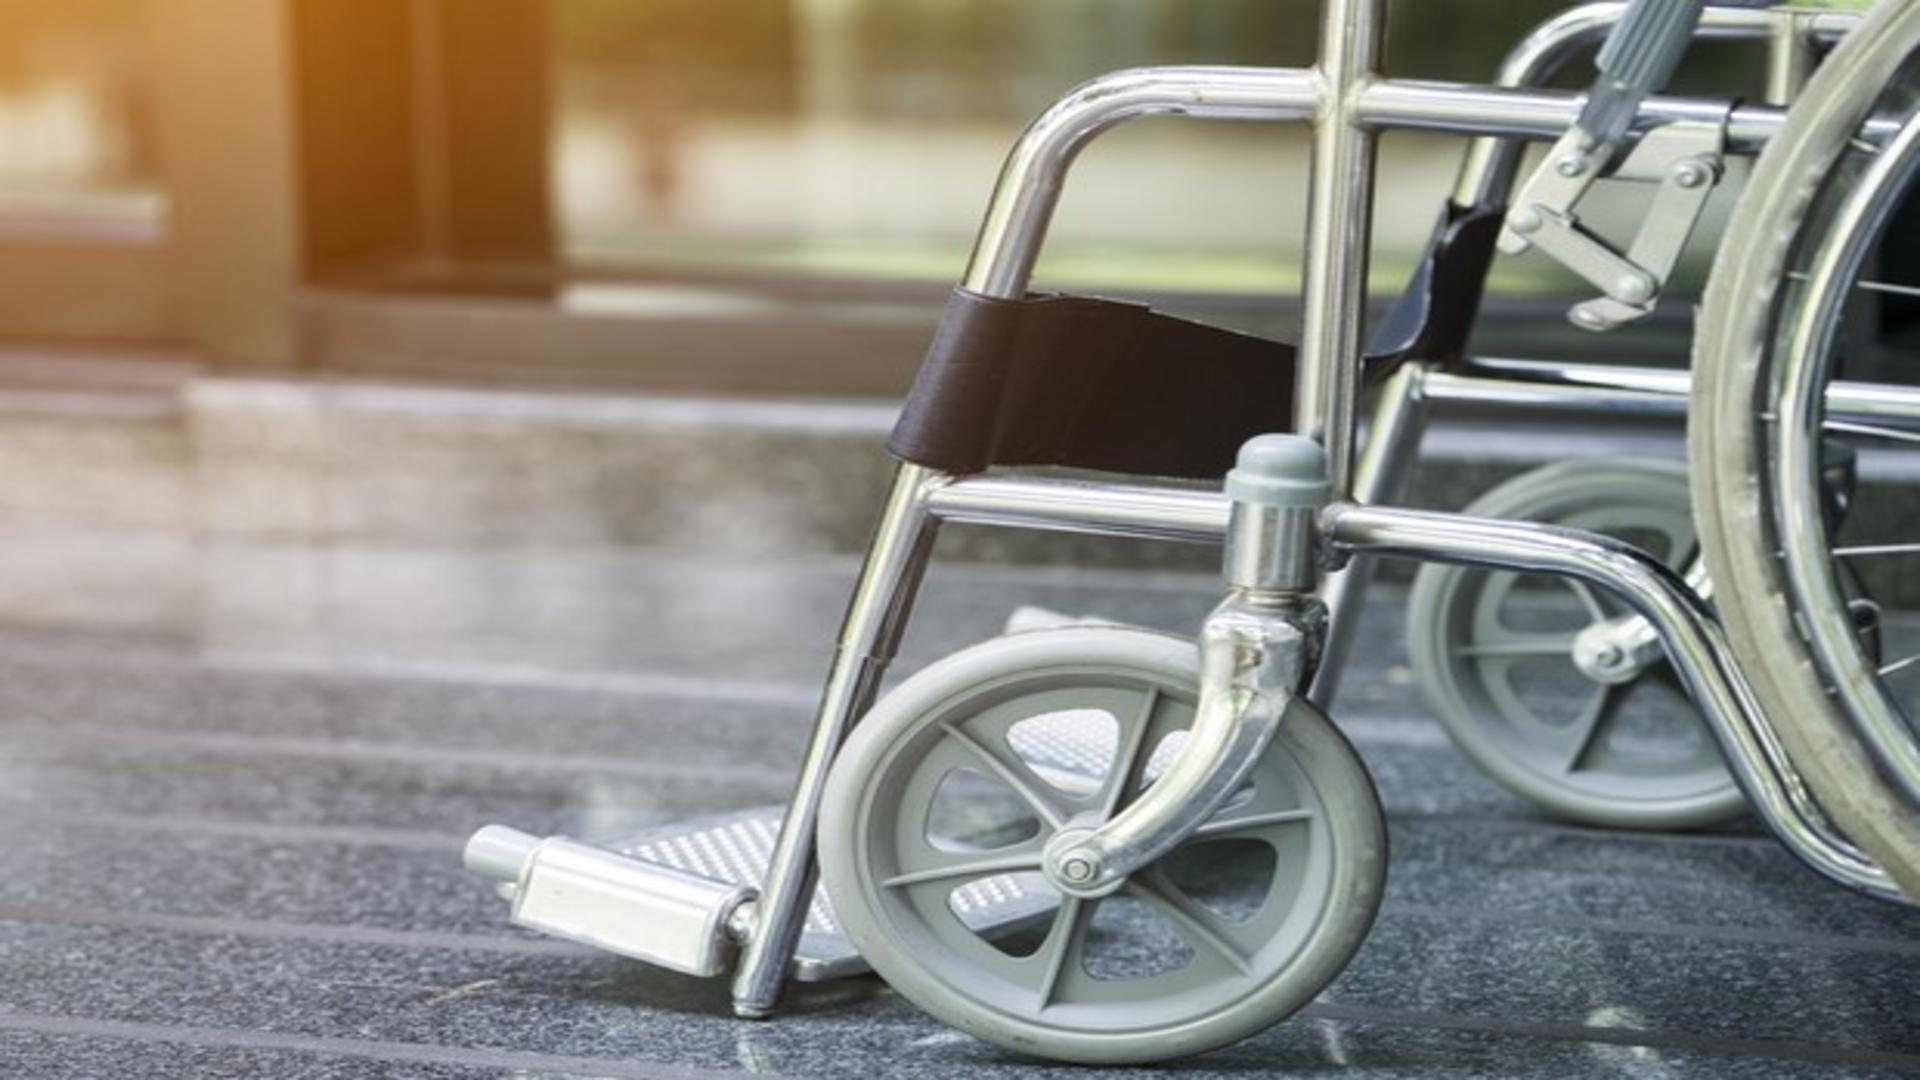 Femeie imobilizată în scaun cu rotile, moartă după ce s-ar fi aruncat intenționat în fața mașinii